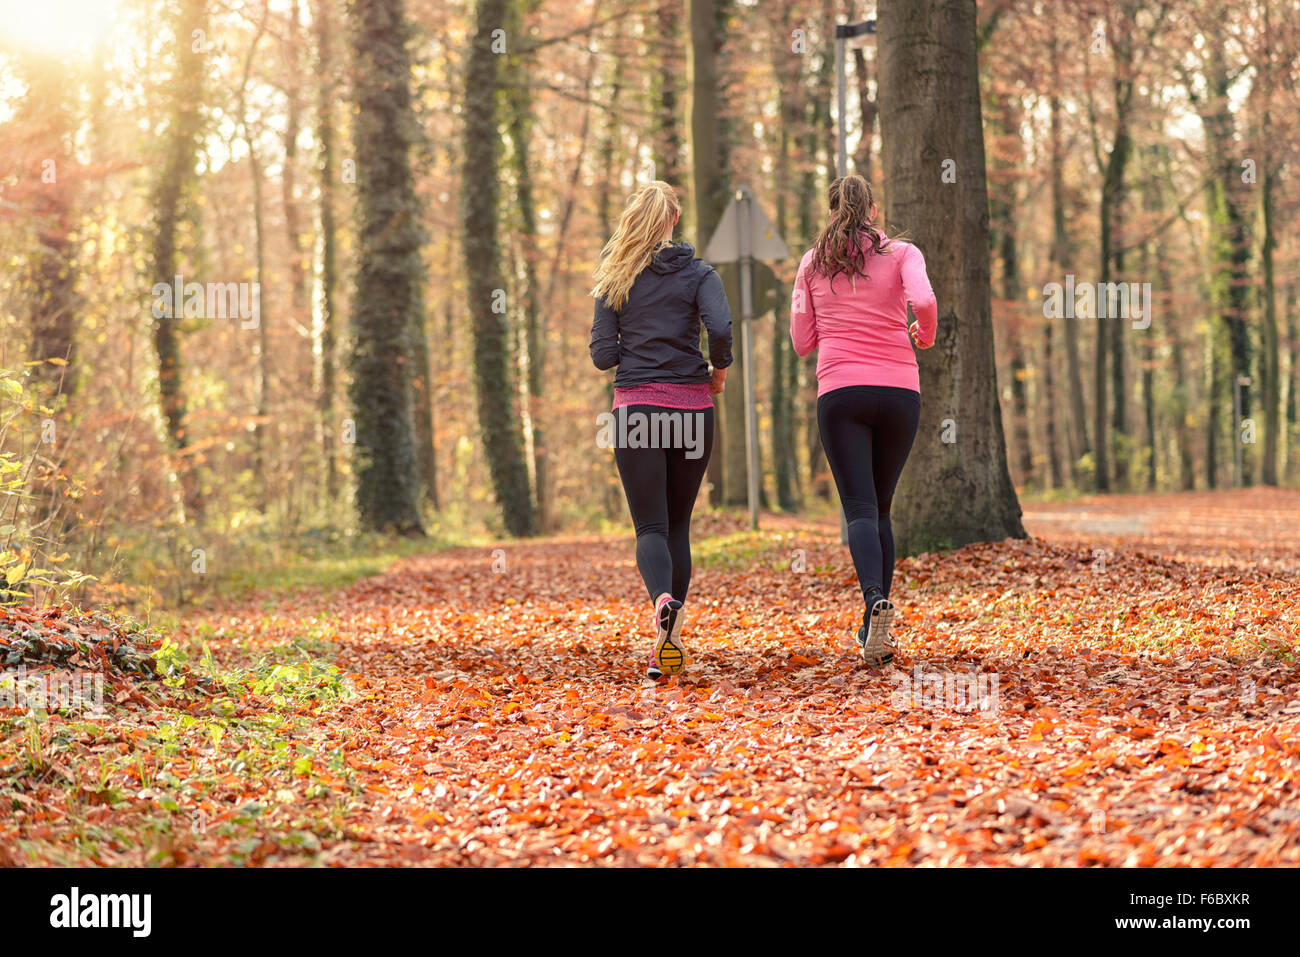 Vue arrière des deux fit young woman jogging ensemble à travers une forêt d'automne dans un concept de vie active saine Banque D'Images